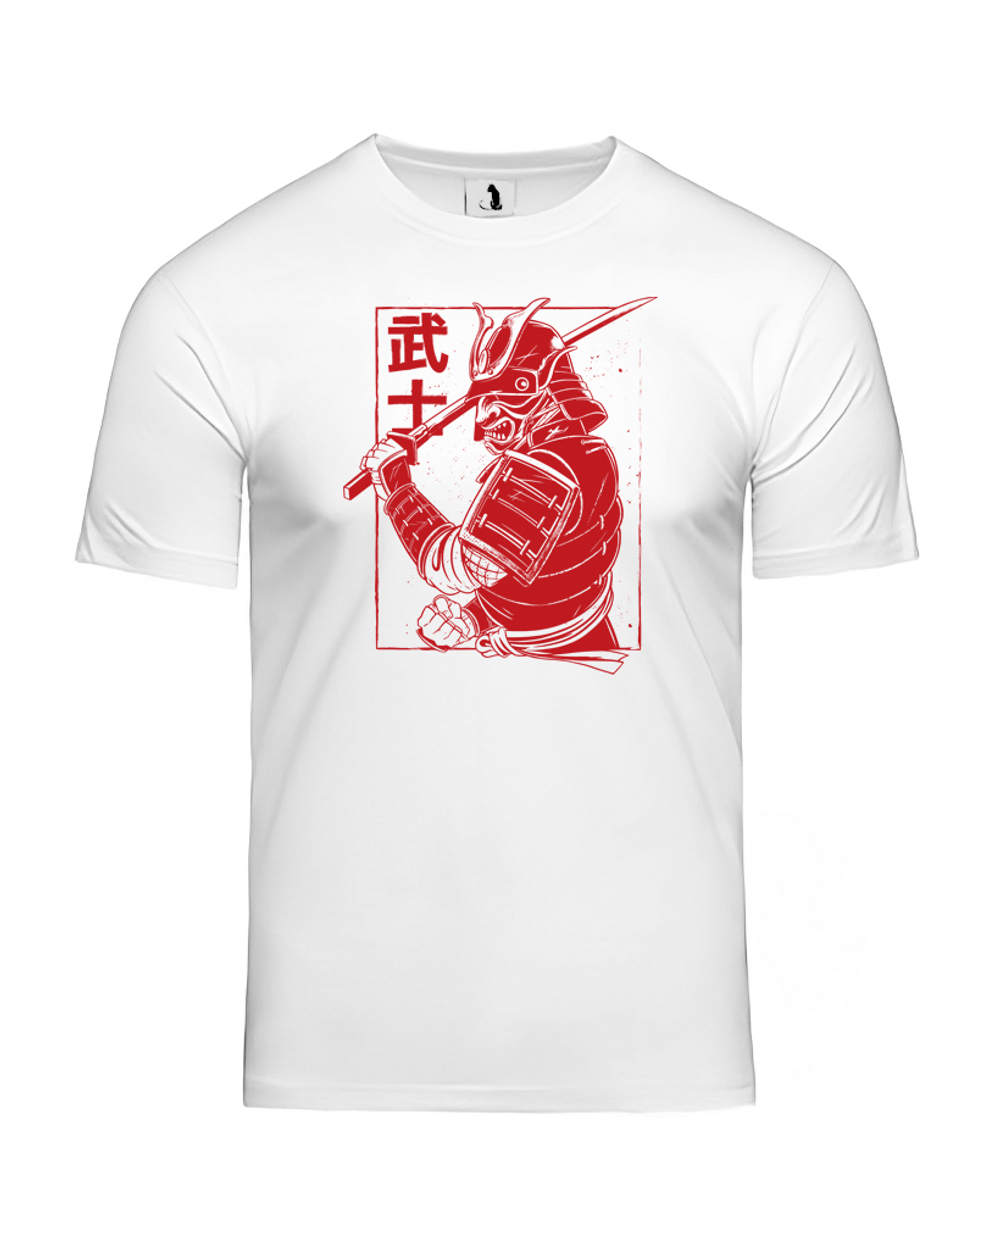 Футболка с самураем мужская белая с красным рисунком